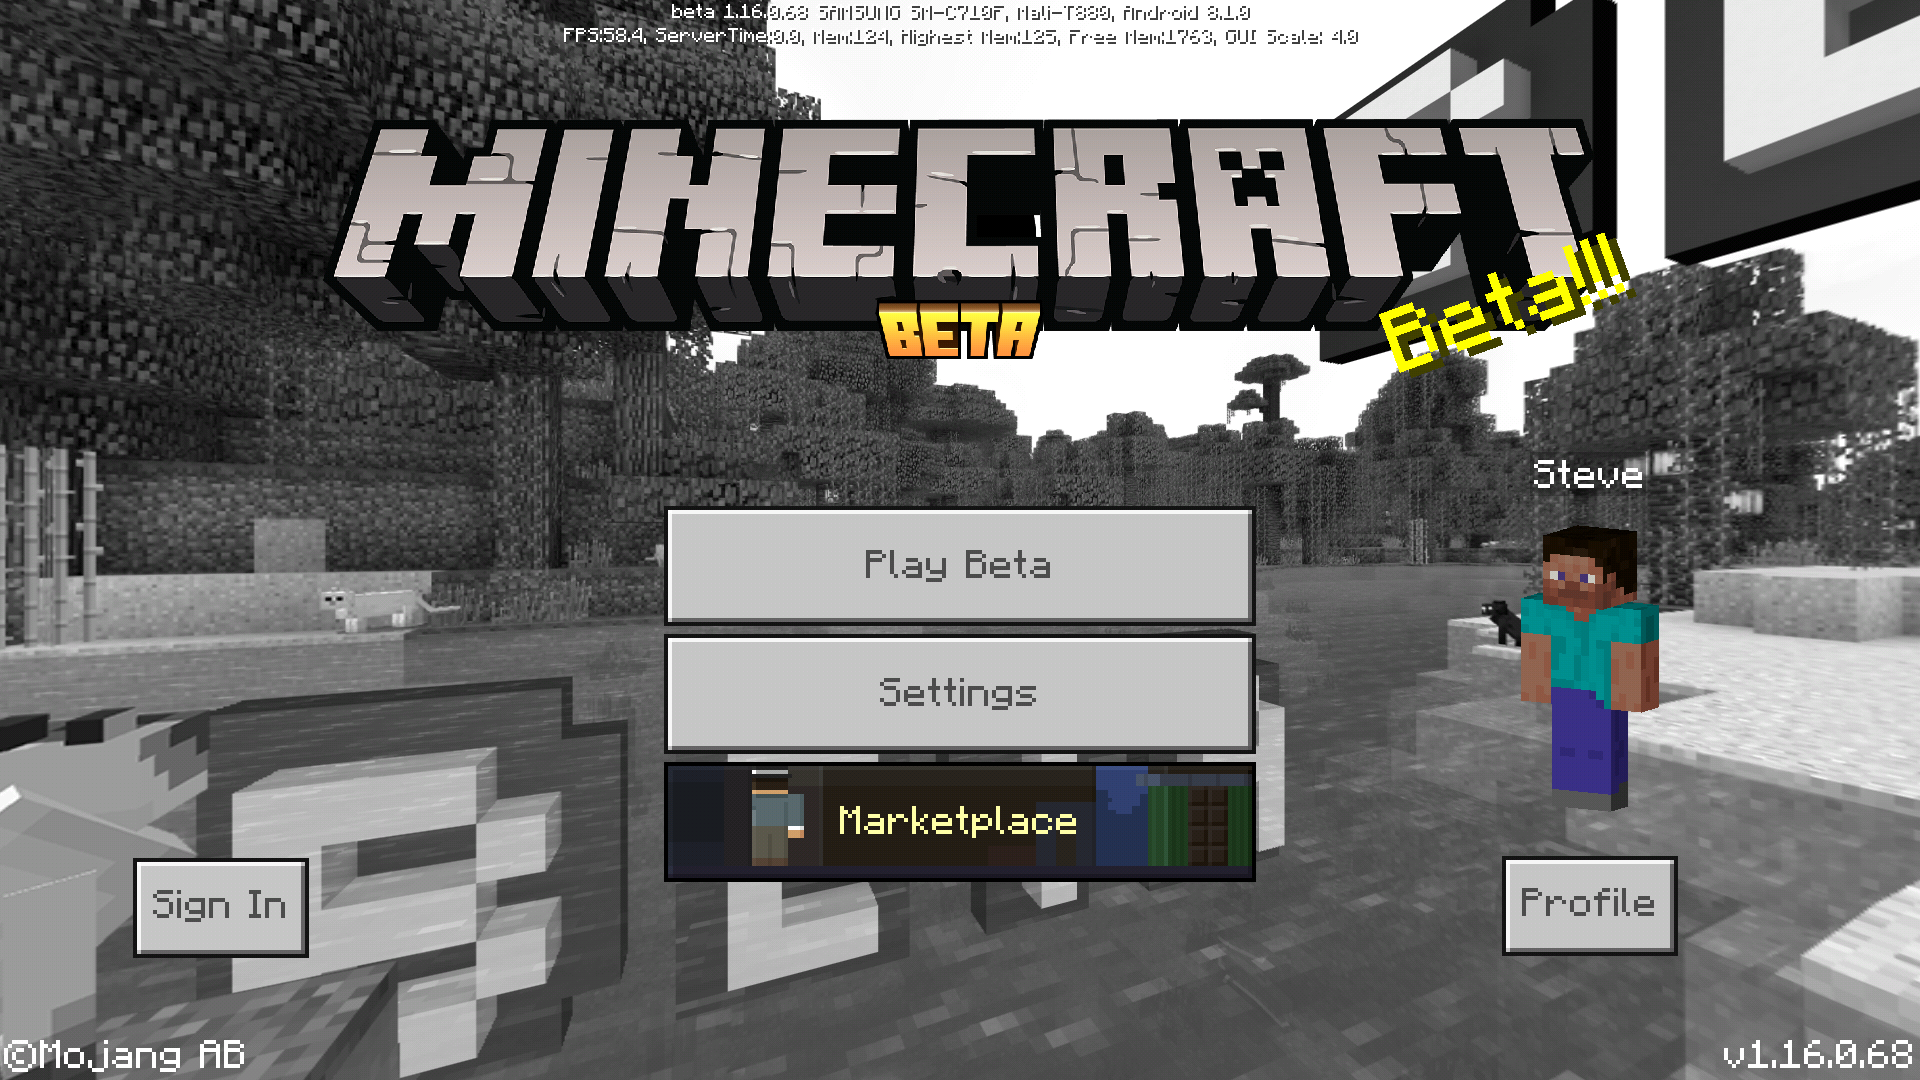 Minecraft: Bedrock Edition Beta recebe atualização com recursos